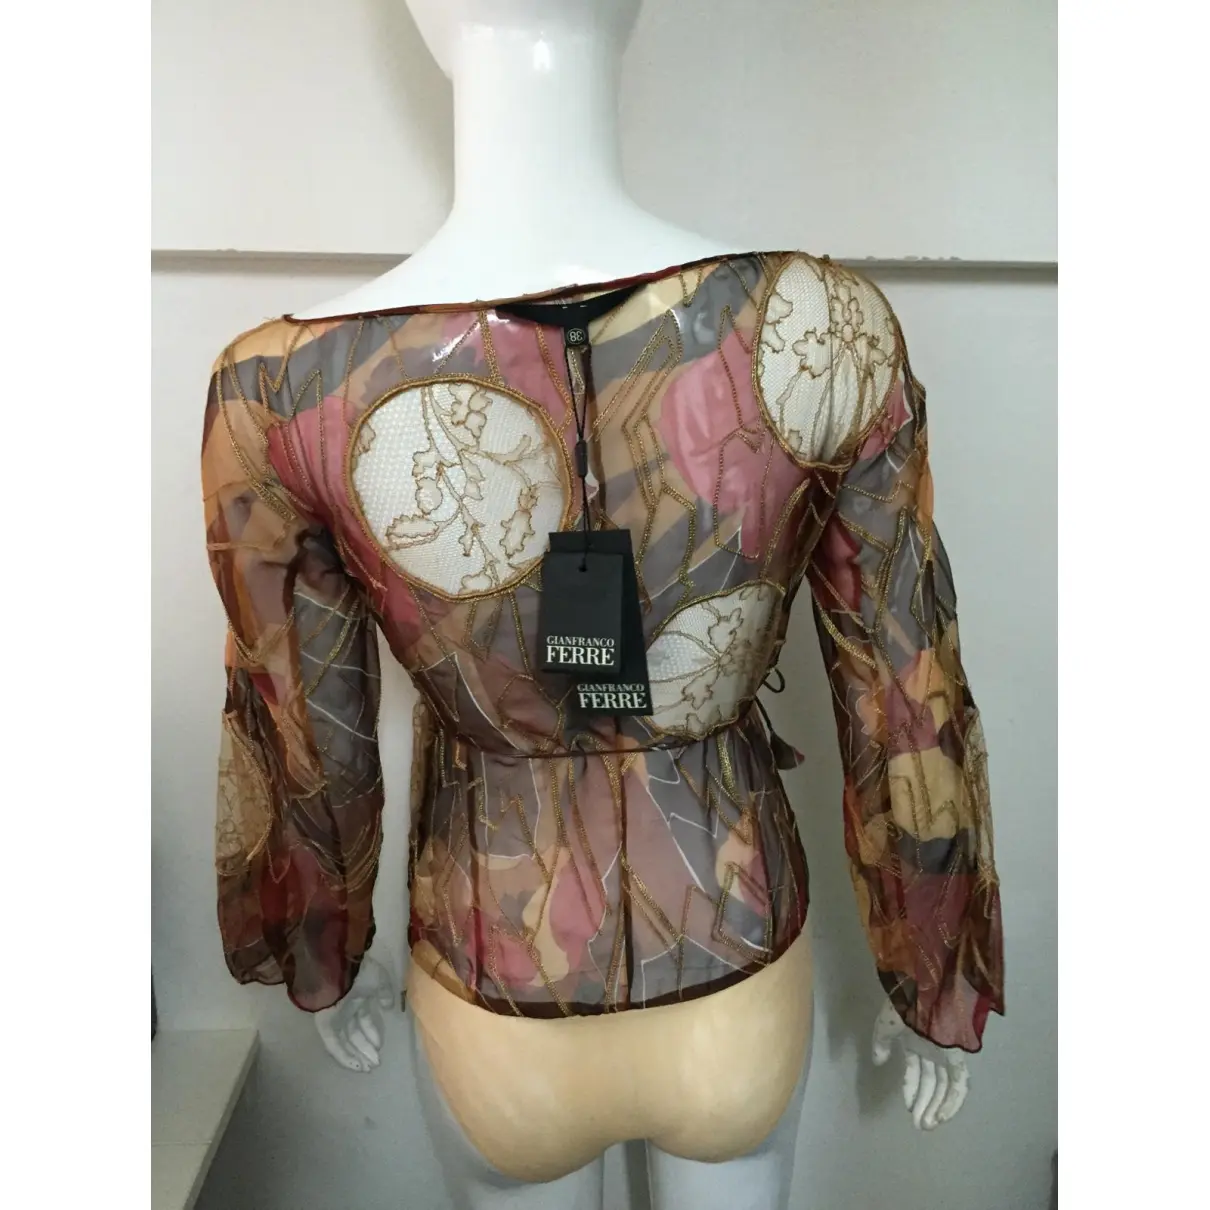 Gianfranco Ferré Silk blouse for sale - Vintage